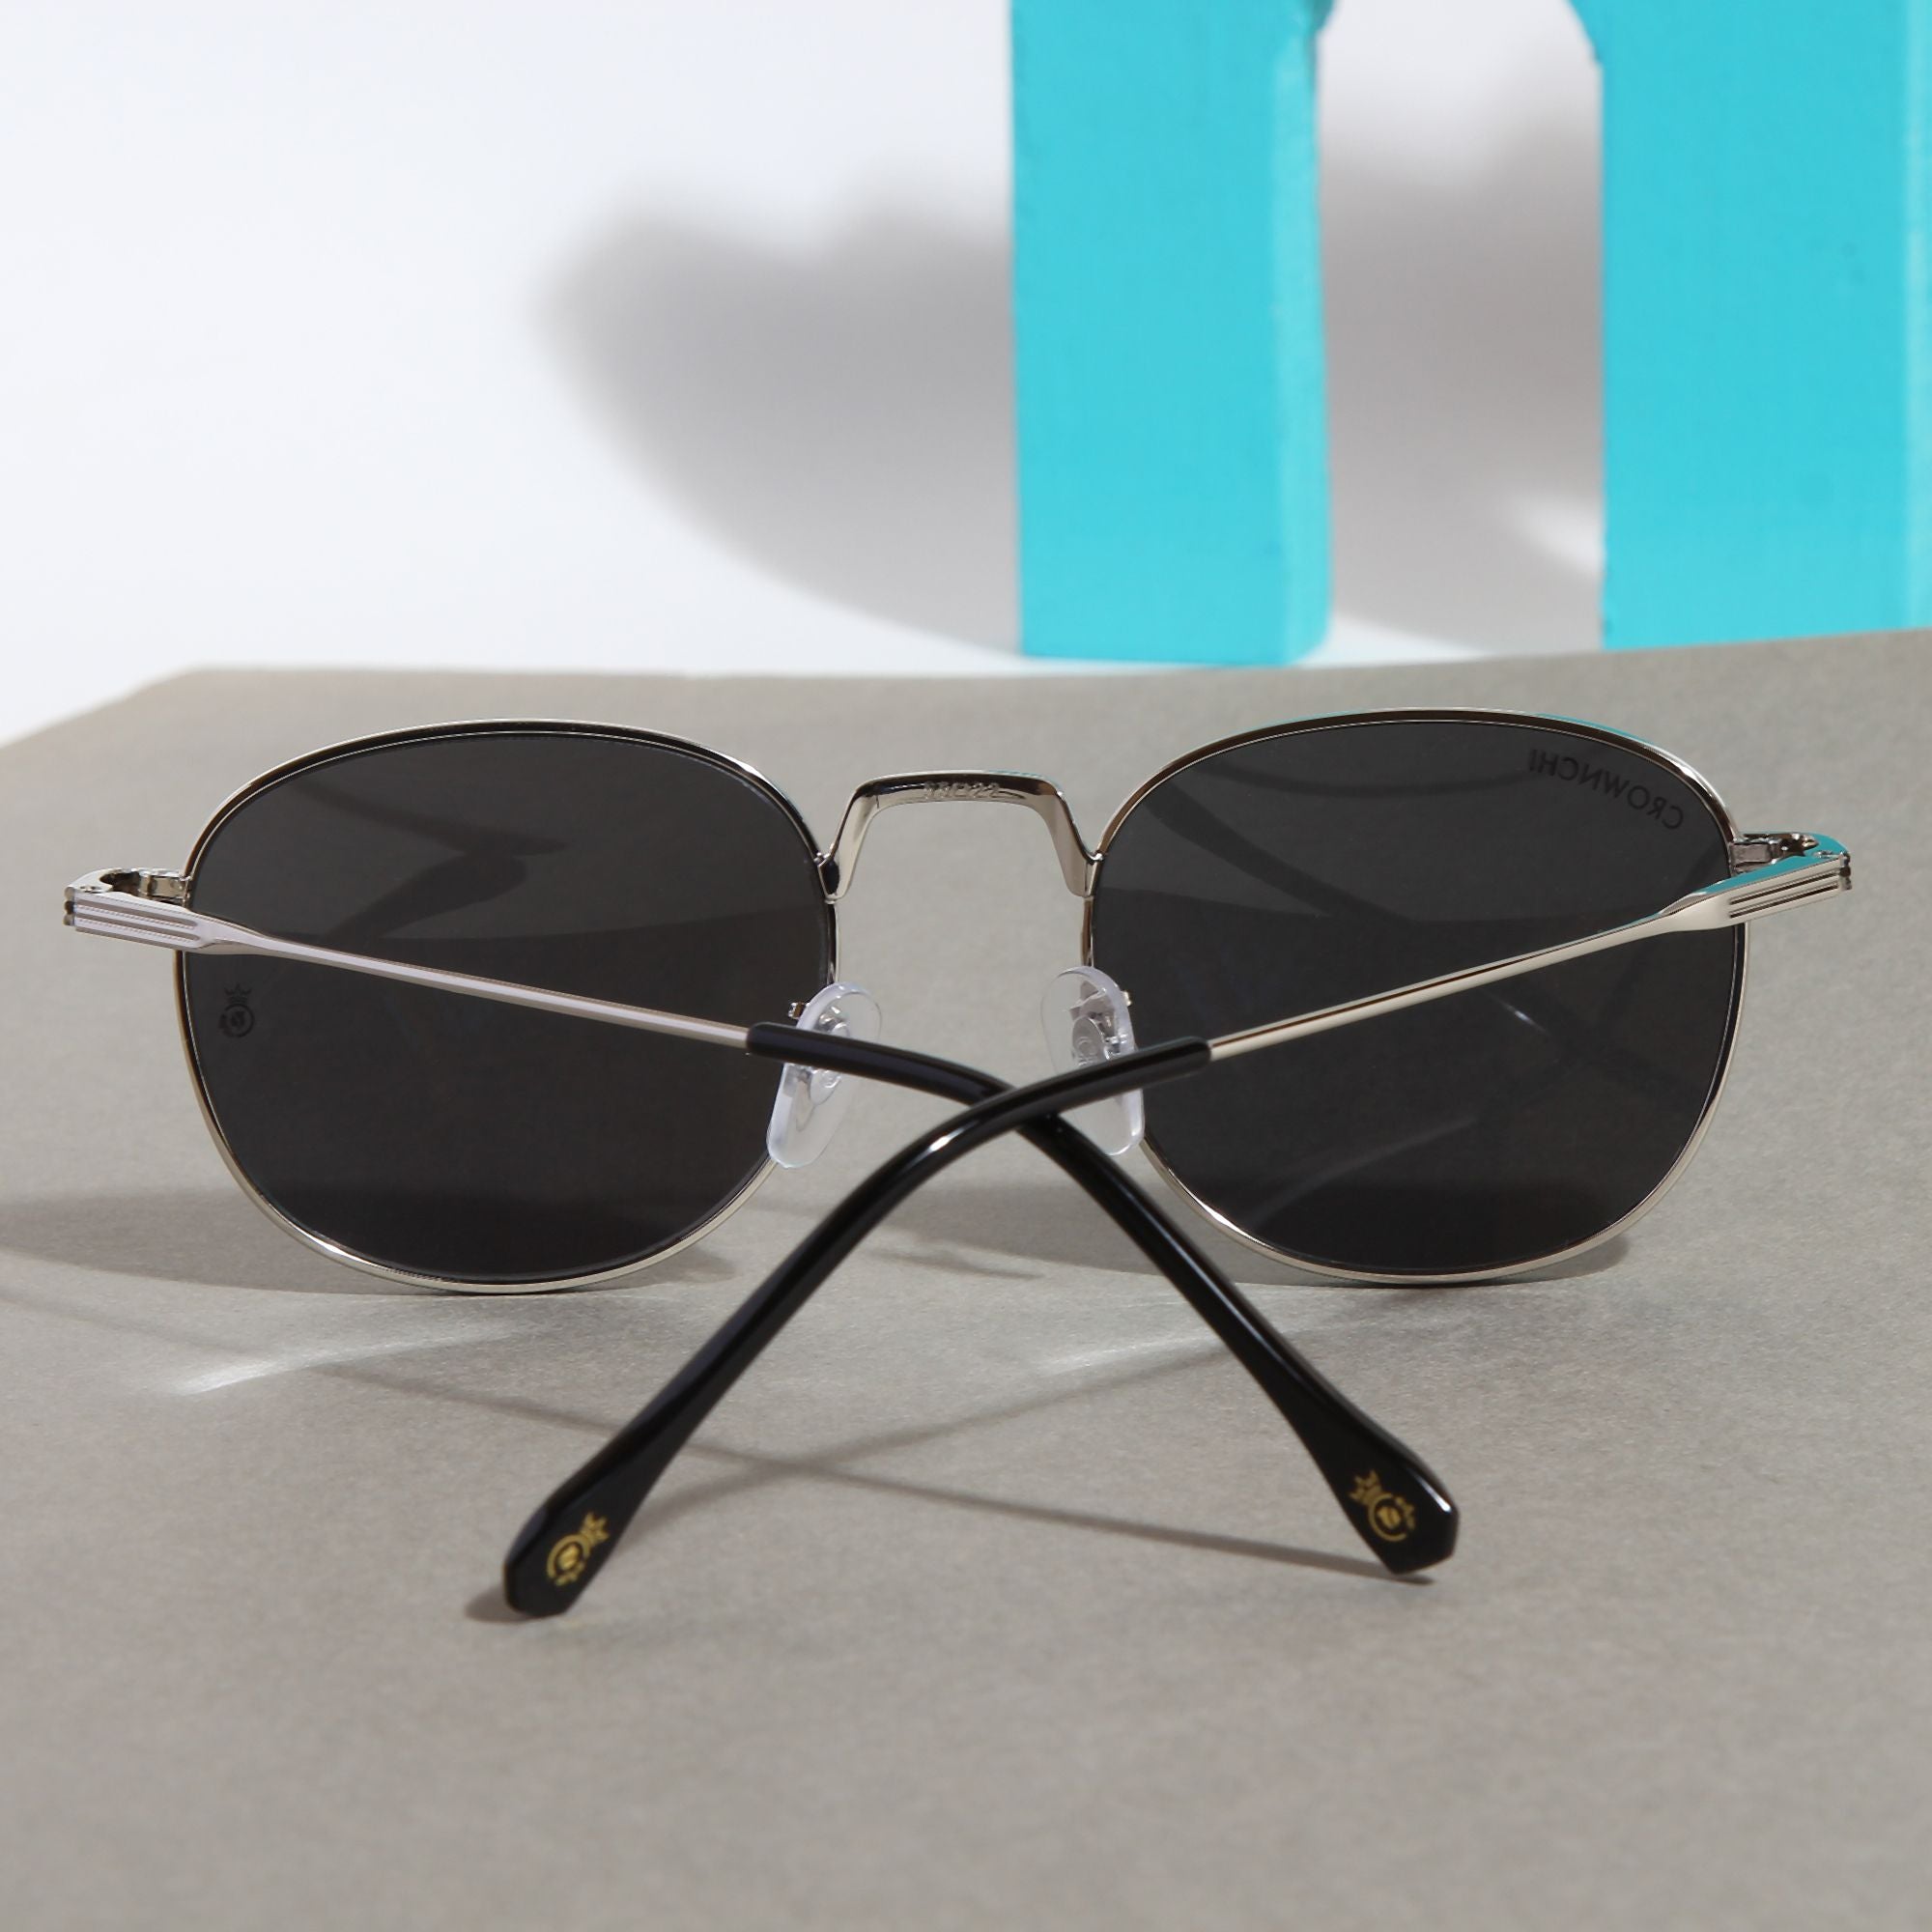 Crownchi Martin Silver Black Round Edition Sunglasses